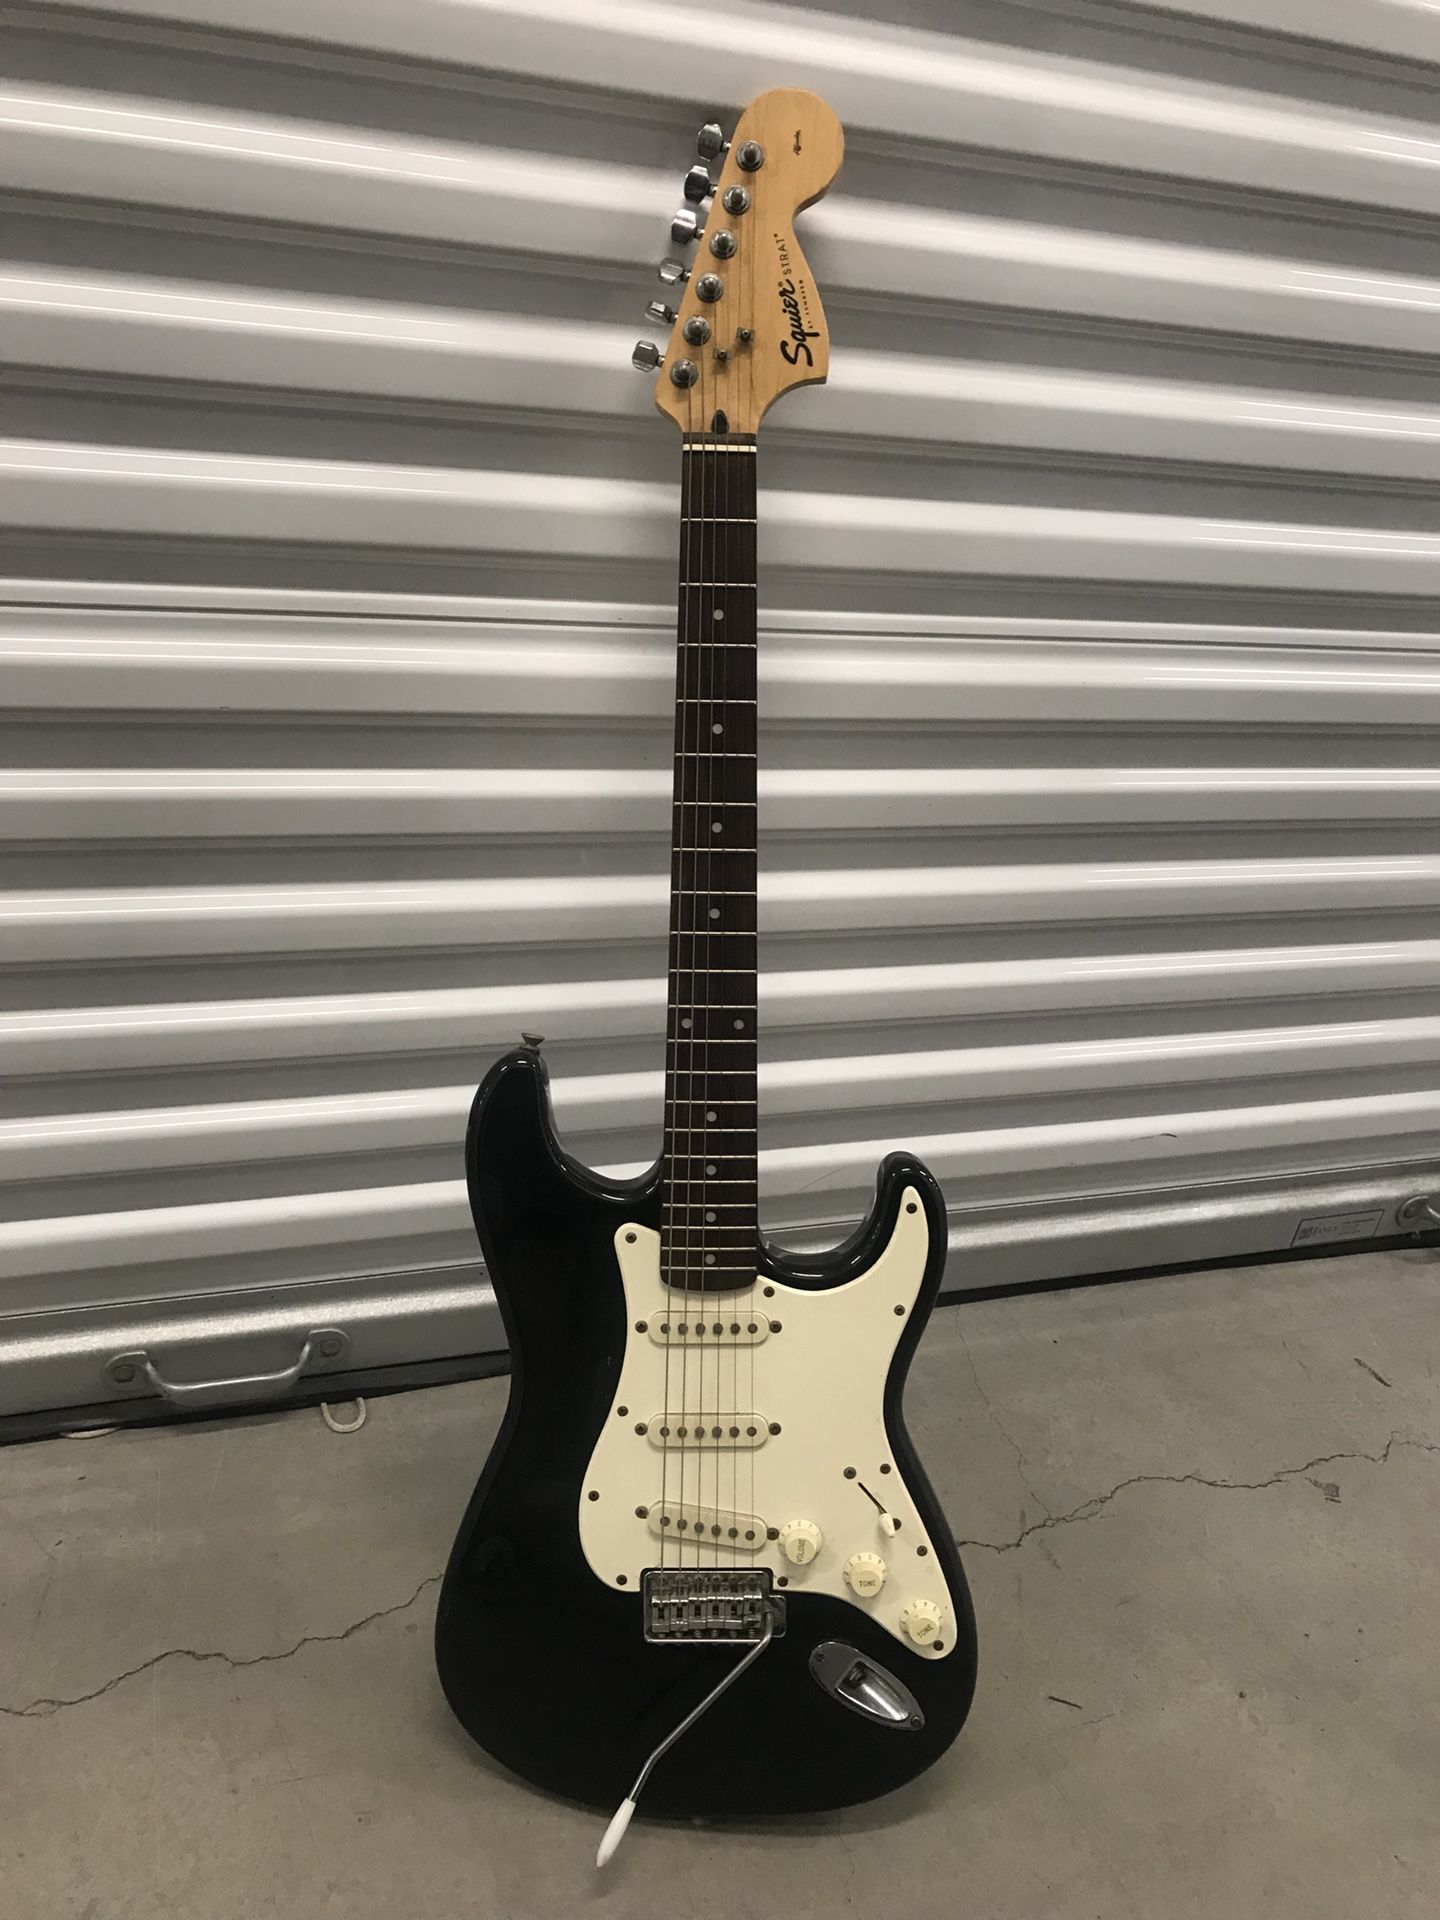 Fender Squire guitar